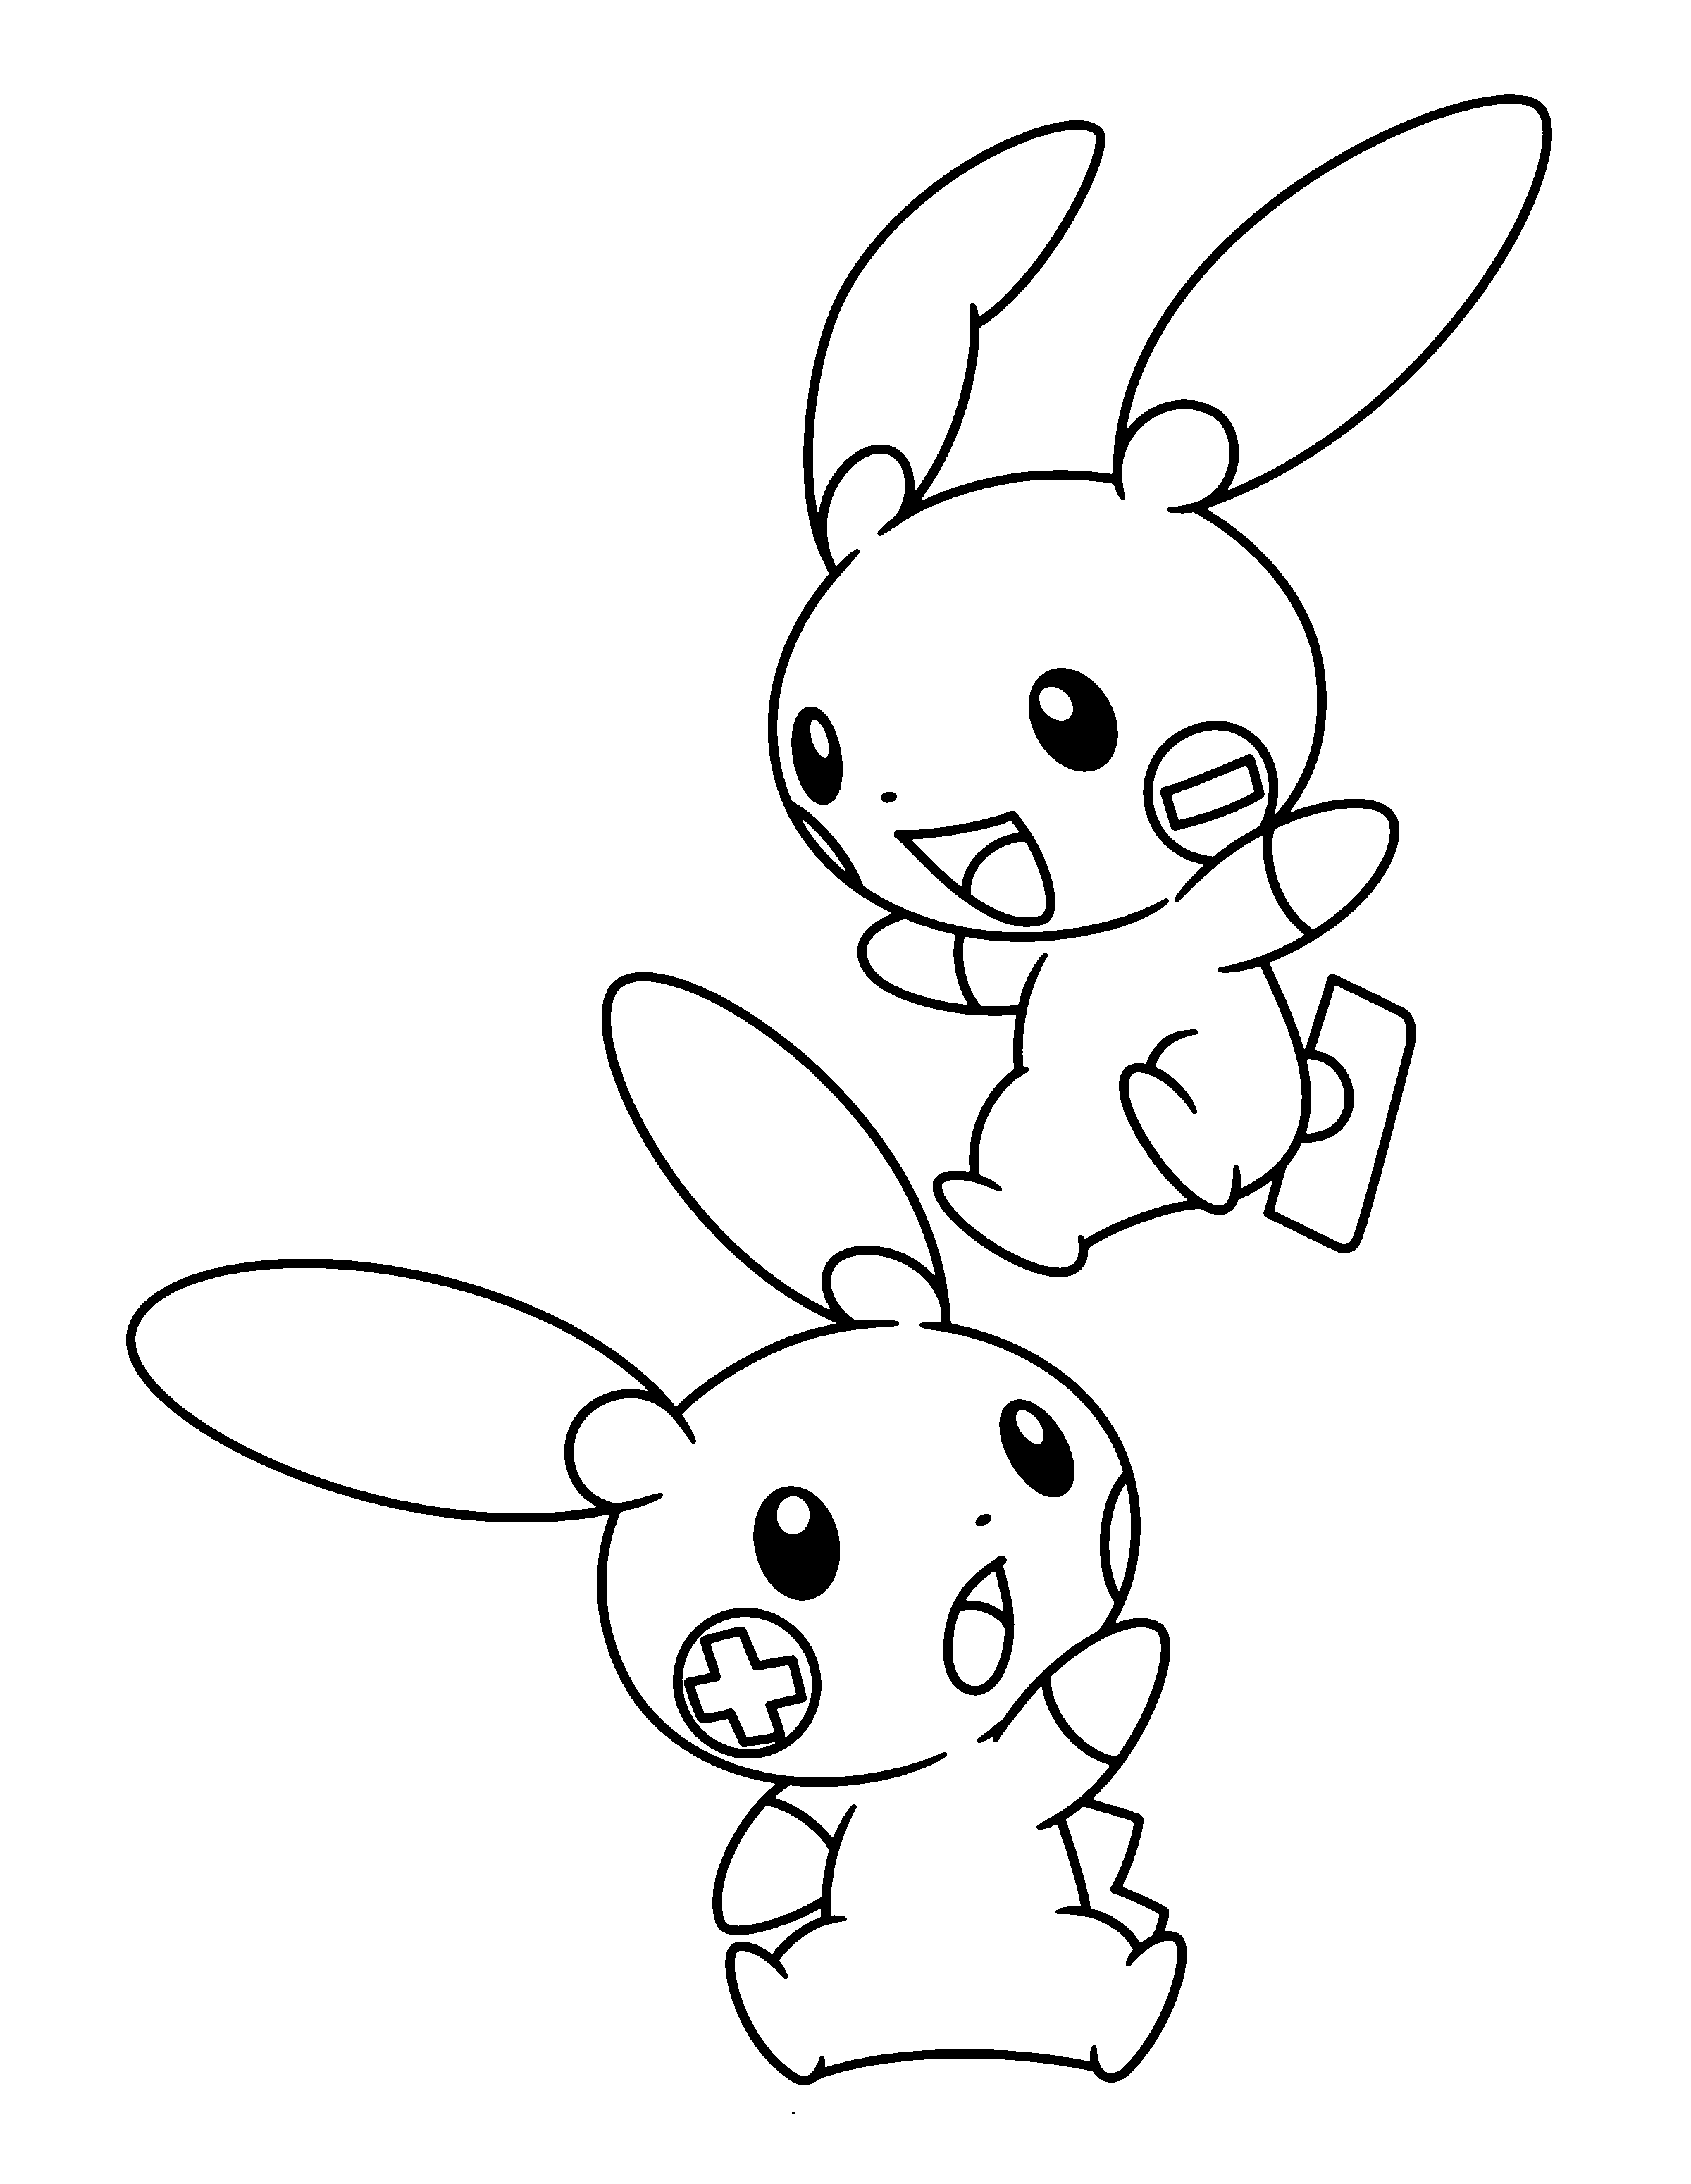 dibujo-para-colorear-pokemon-imagen-animada-0975